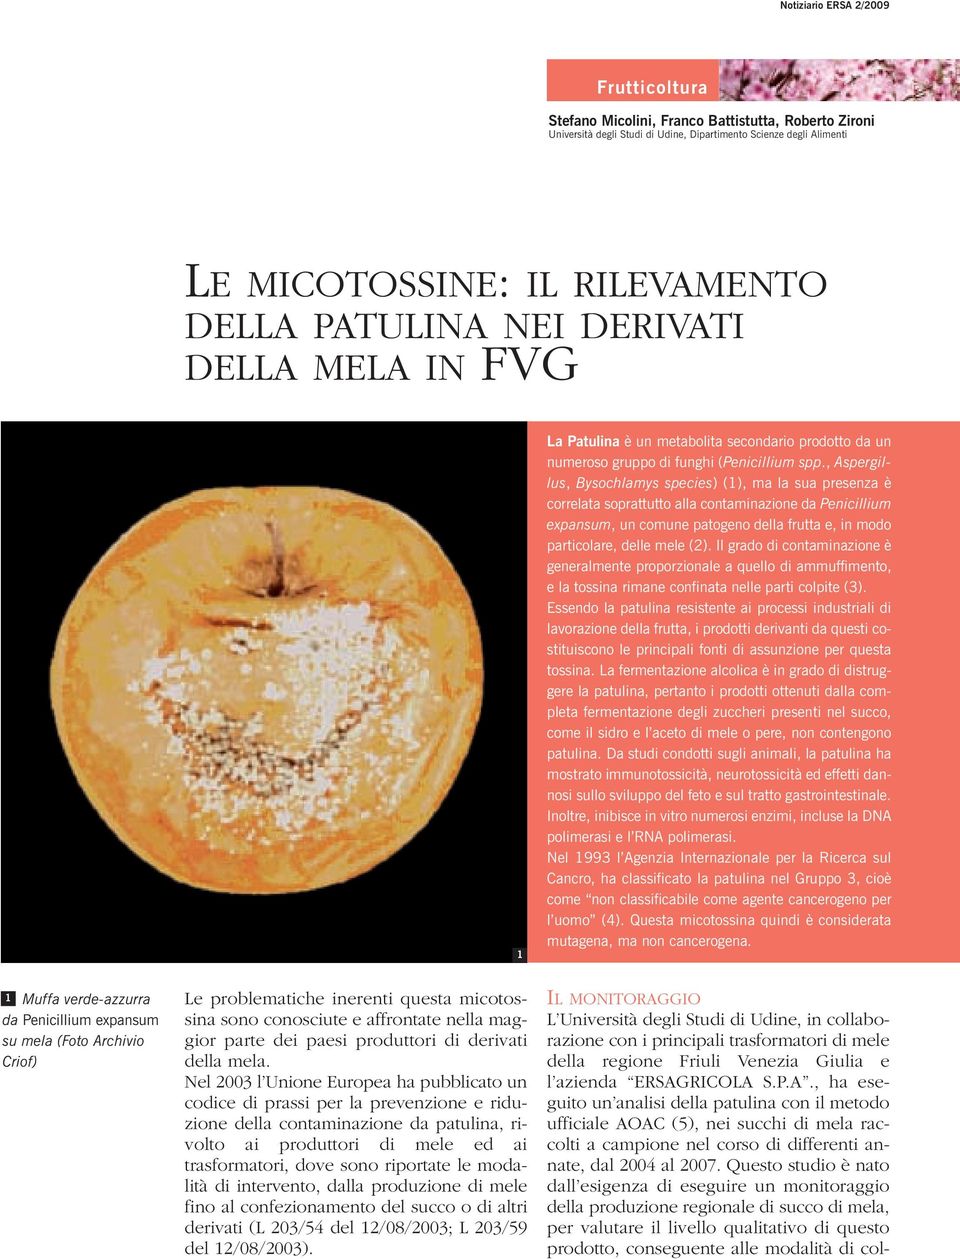 , Aspergillus, Bysochlamys species) (1), ma la sua presenza è correlata soprattutto alla contaminazione da Penicillium expansum, un comune patogeno della frutta e, in modo particolare, delle mele (2).